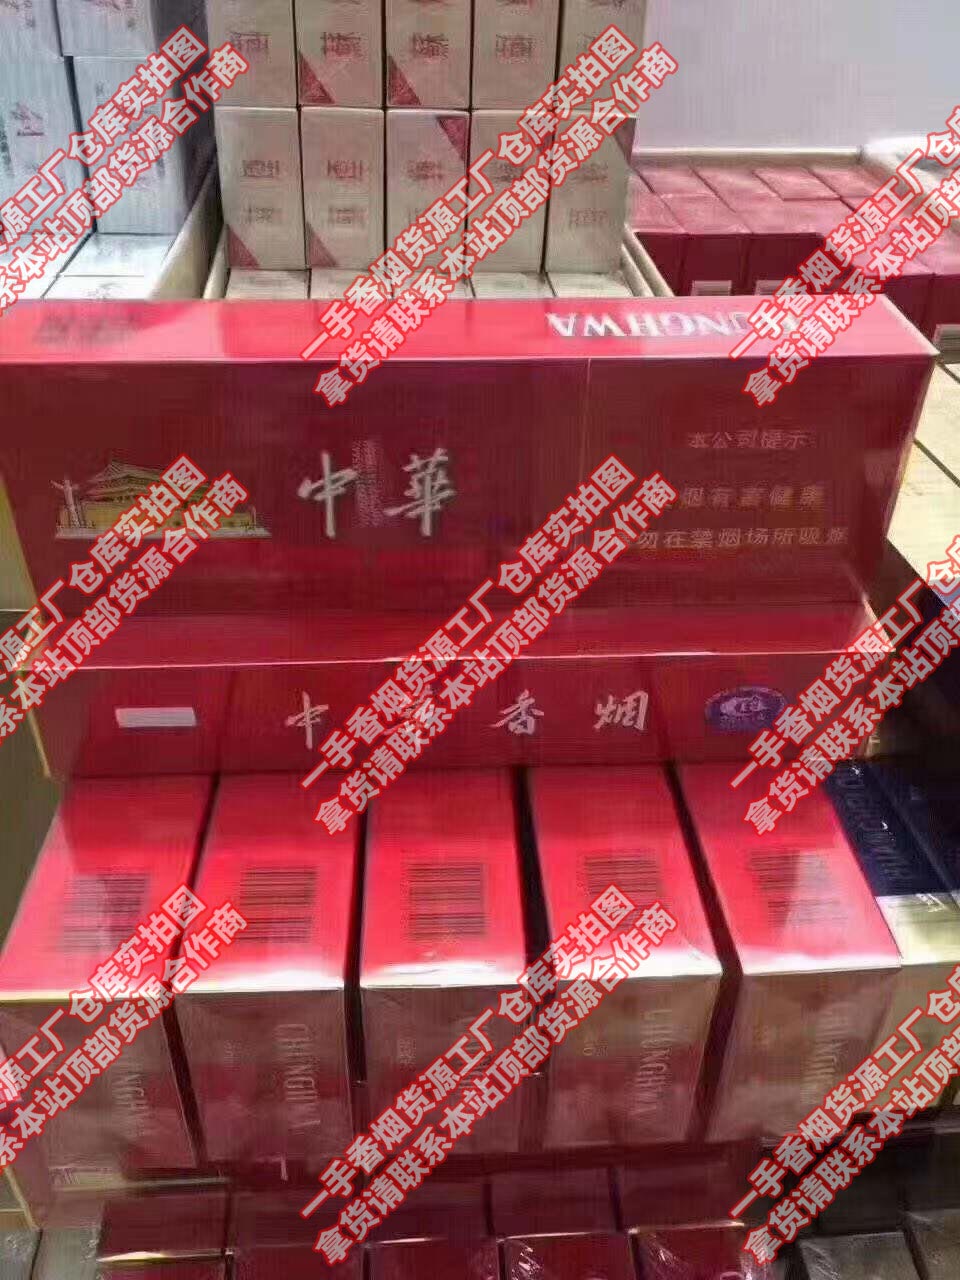 中国香烟网上商城-中国烟草市场网-中国烟草网上订货拿货平台